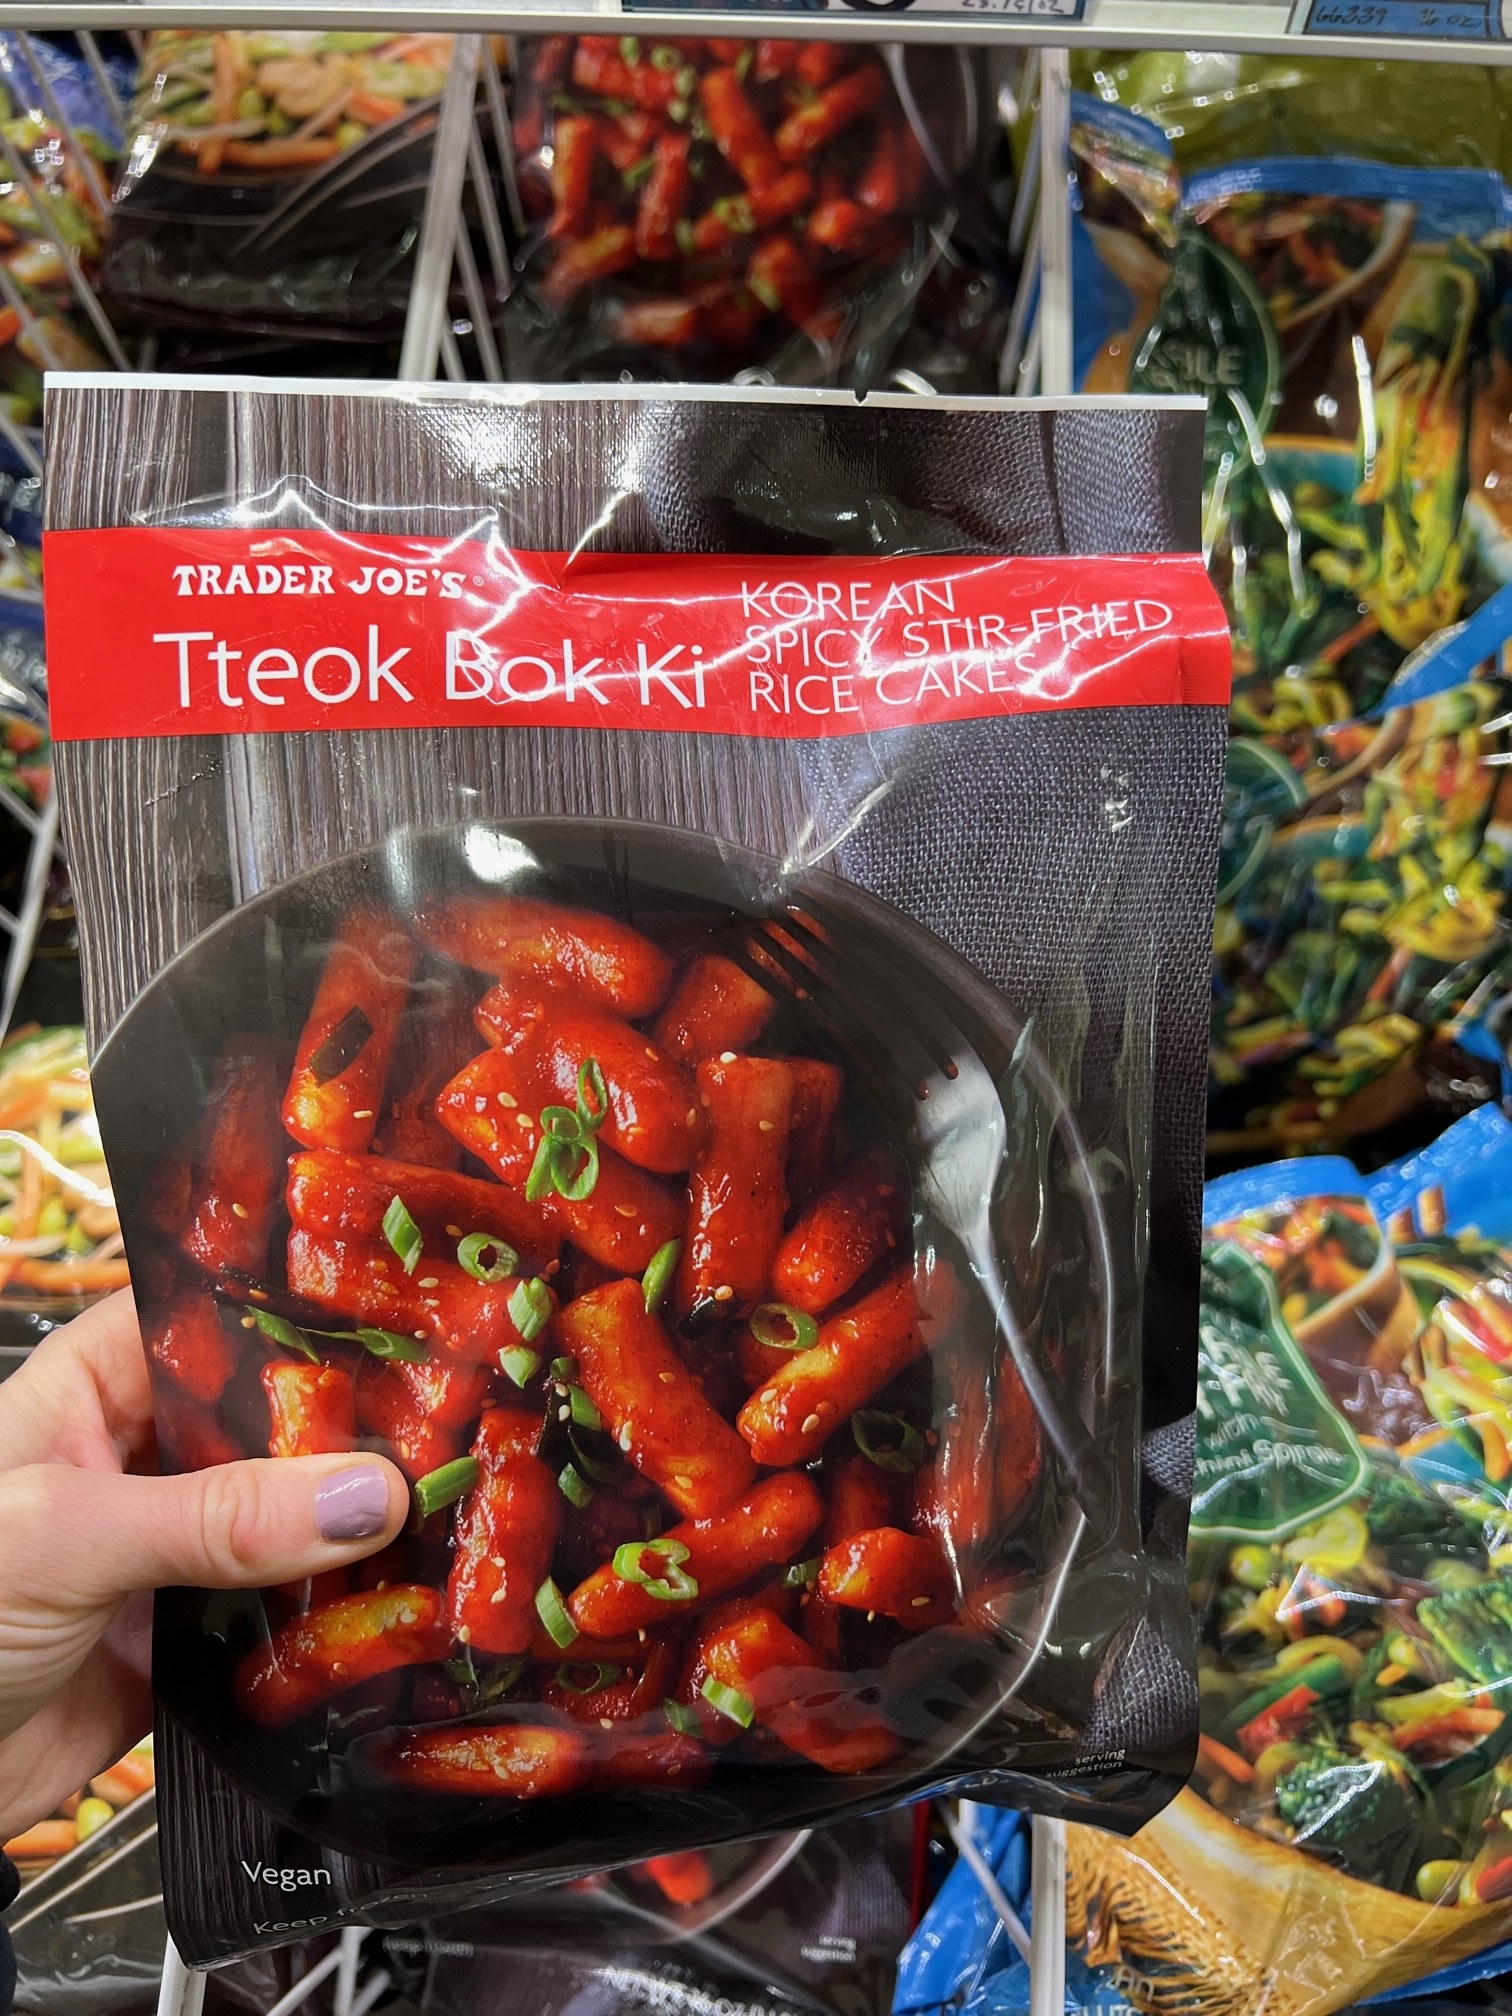 Tteok Bok Ki (Korean Spicy Stir-Fried Rice Cakes)